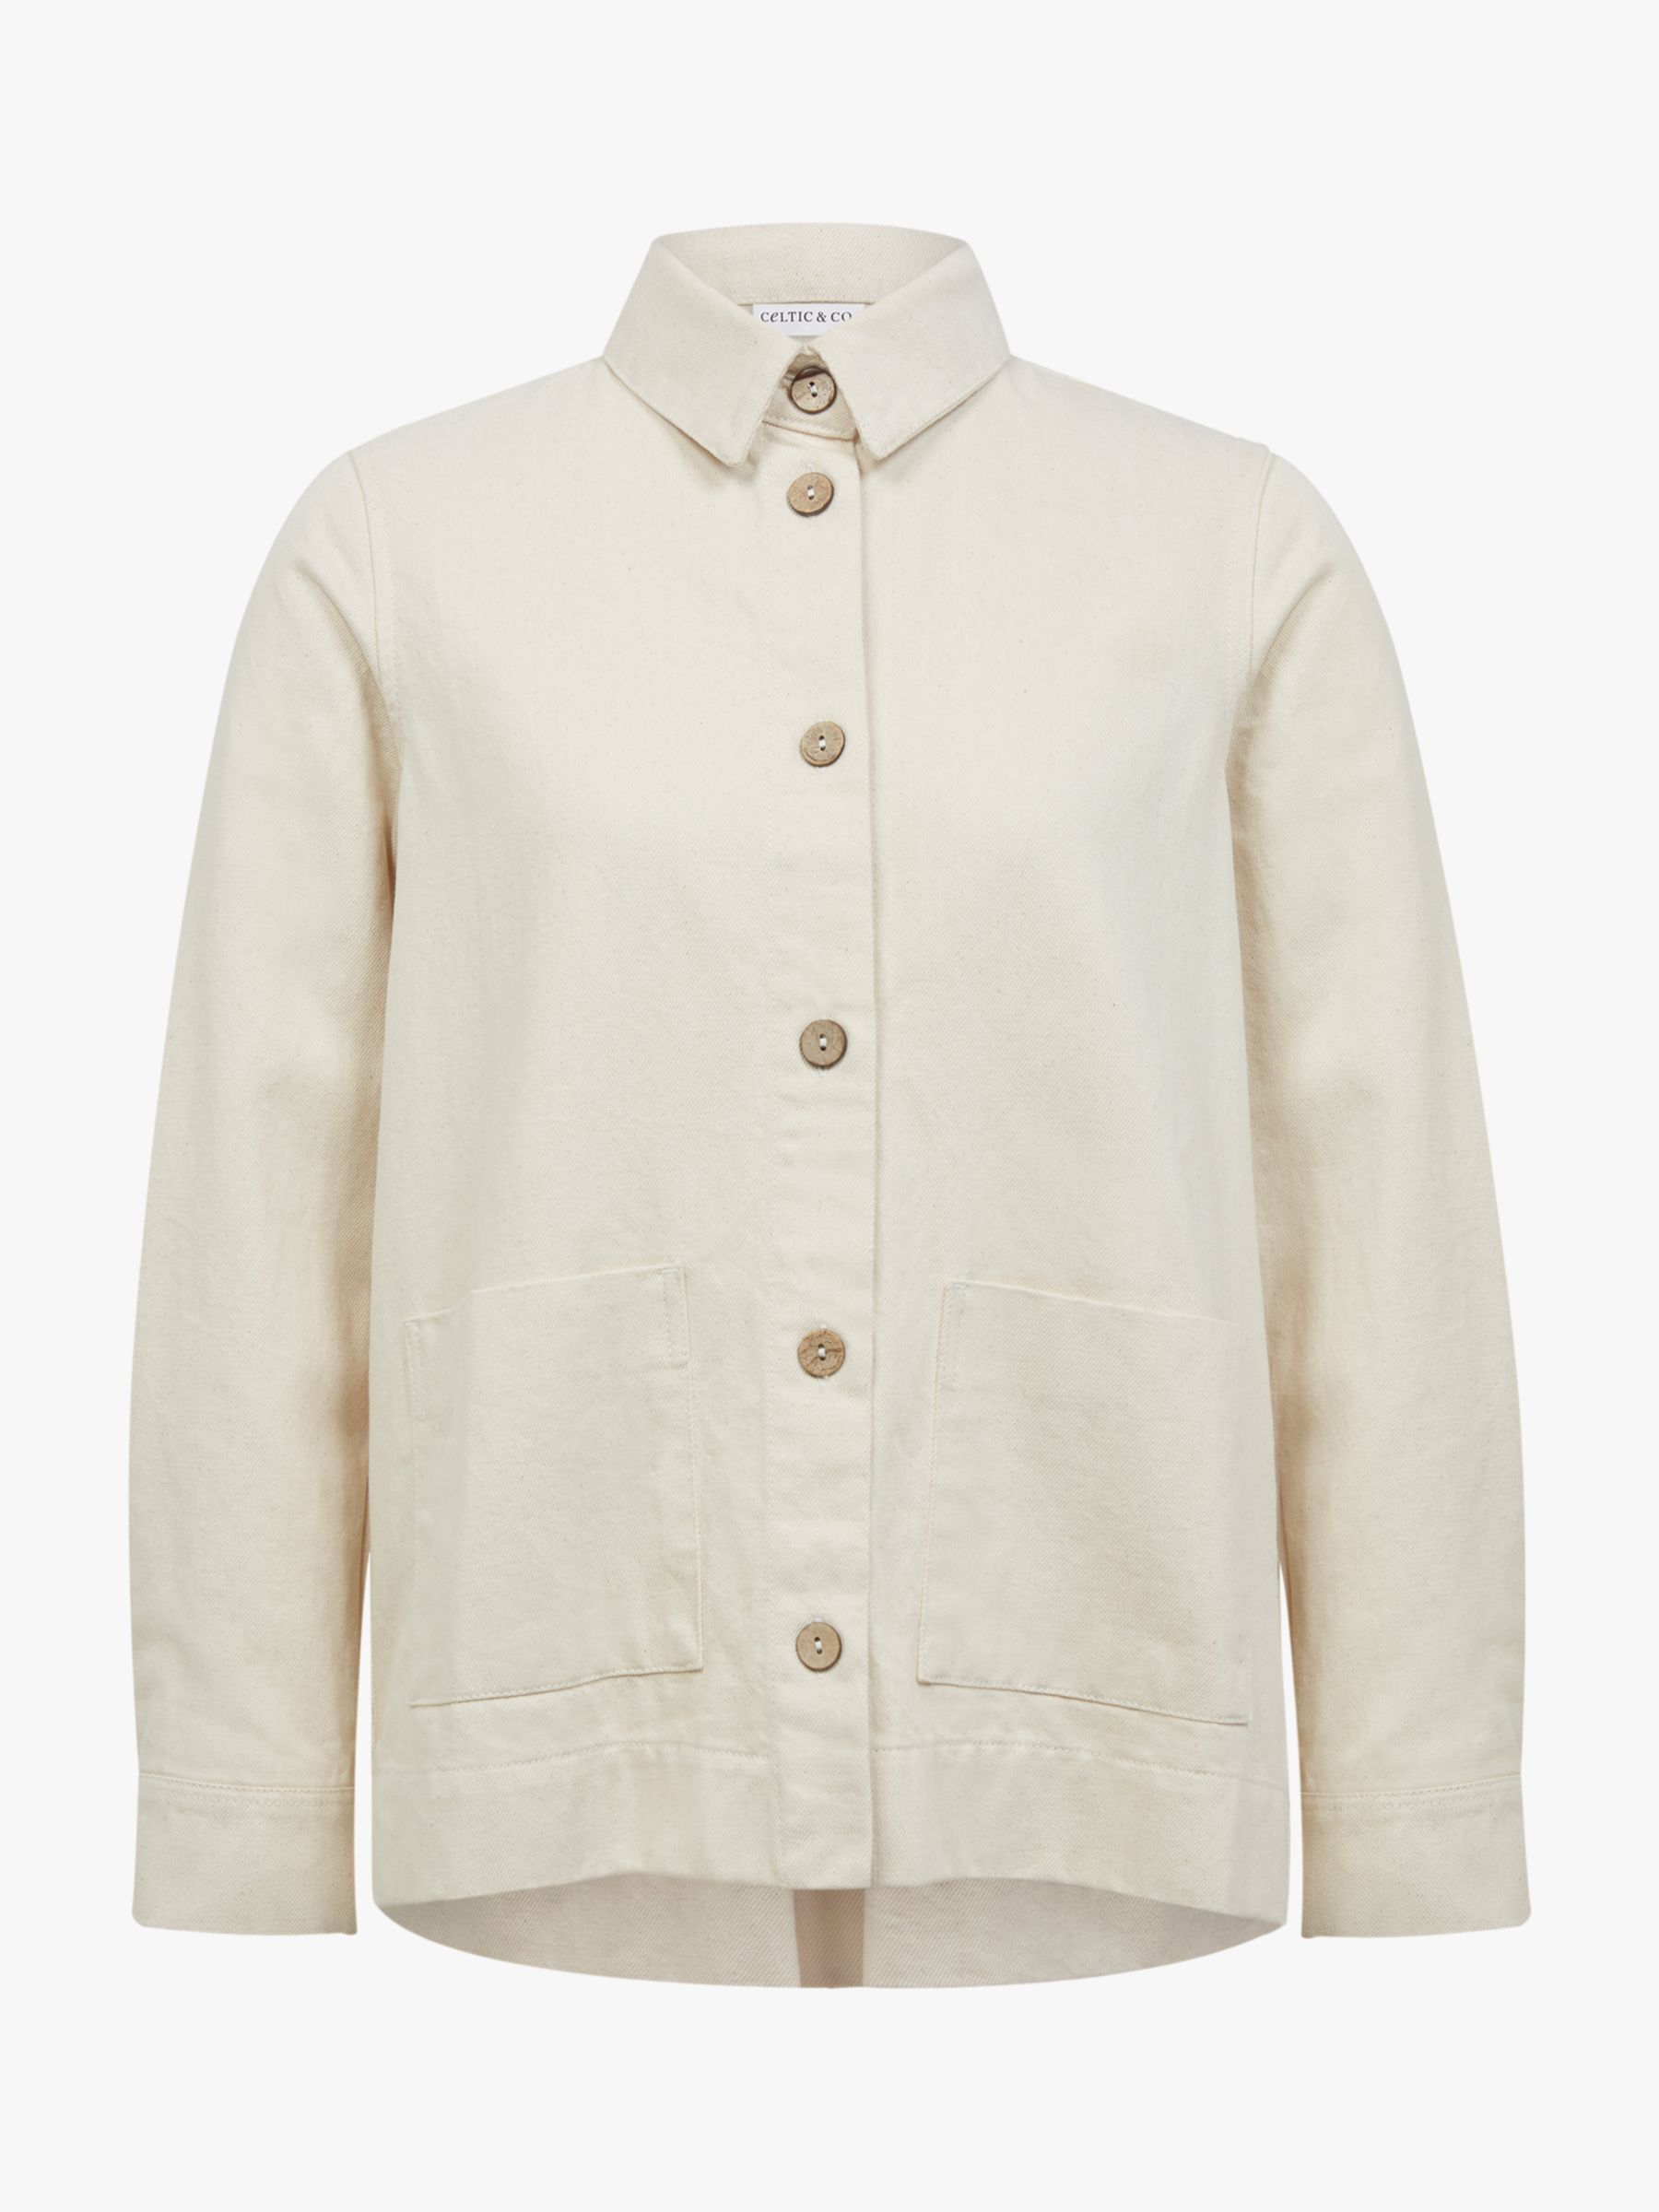 Celtic & Co. Cotton Jacket, Oatmeal, 8